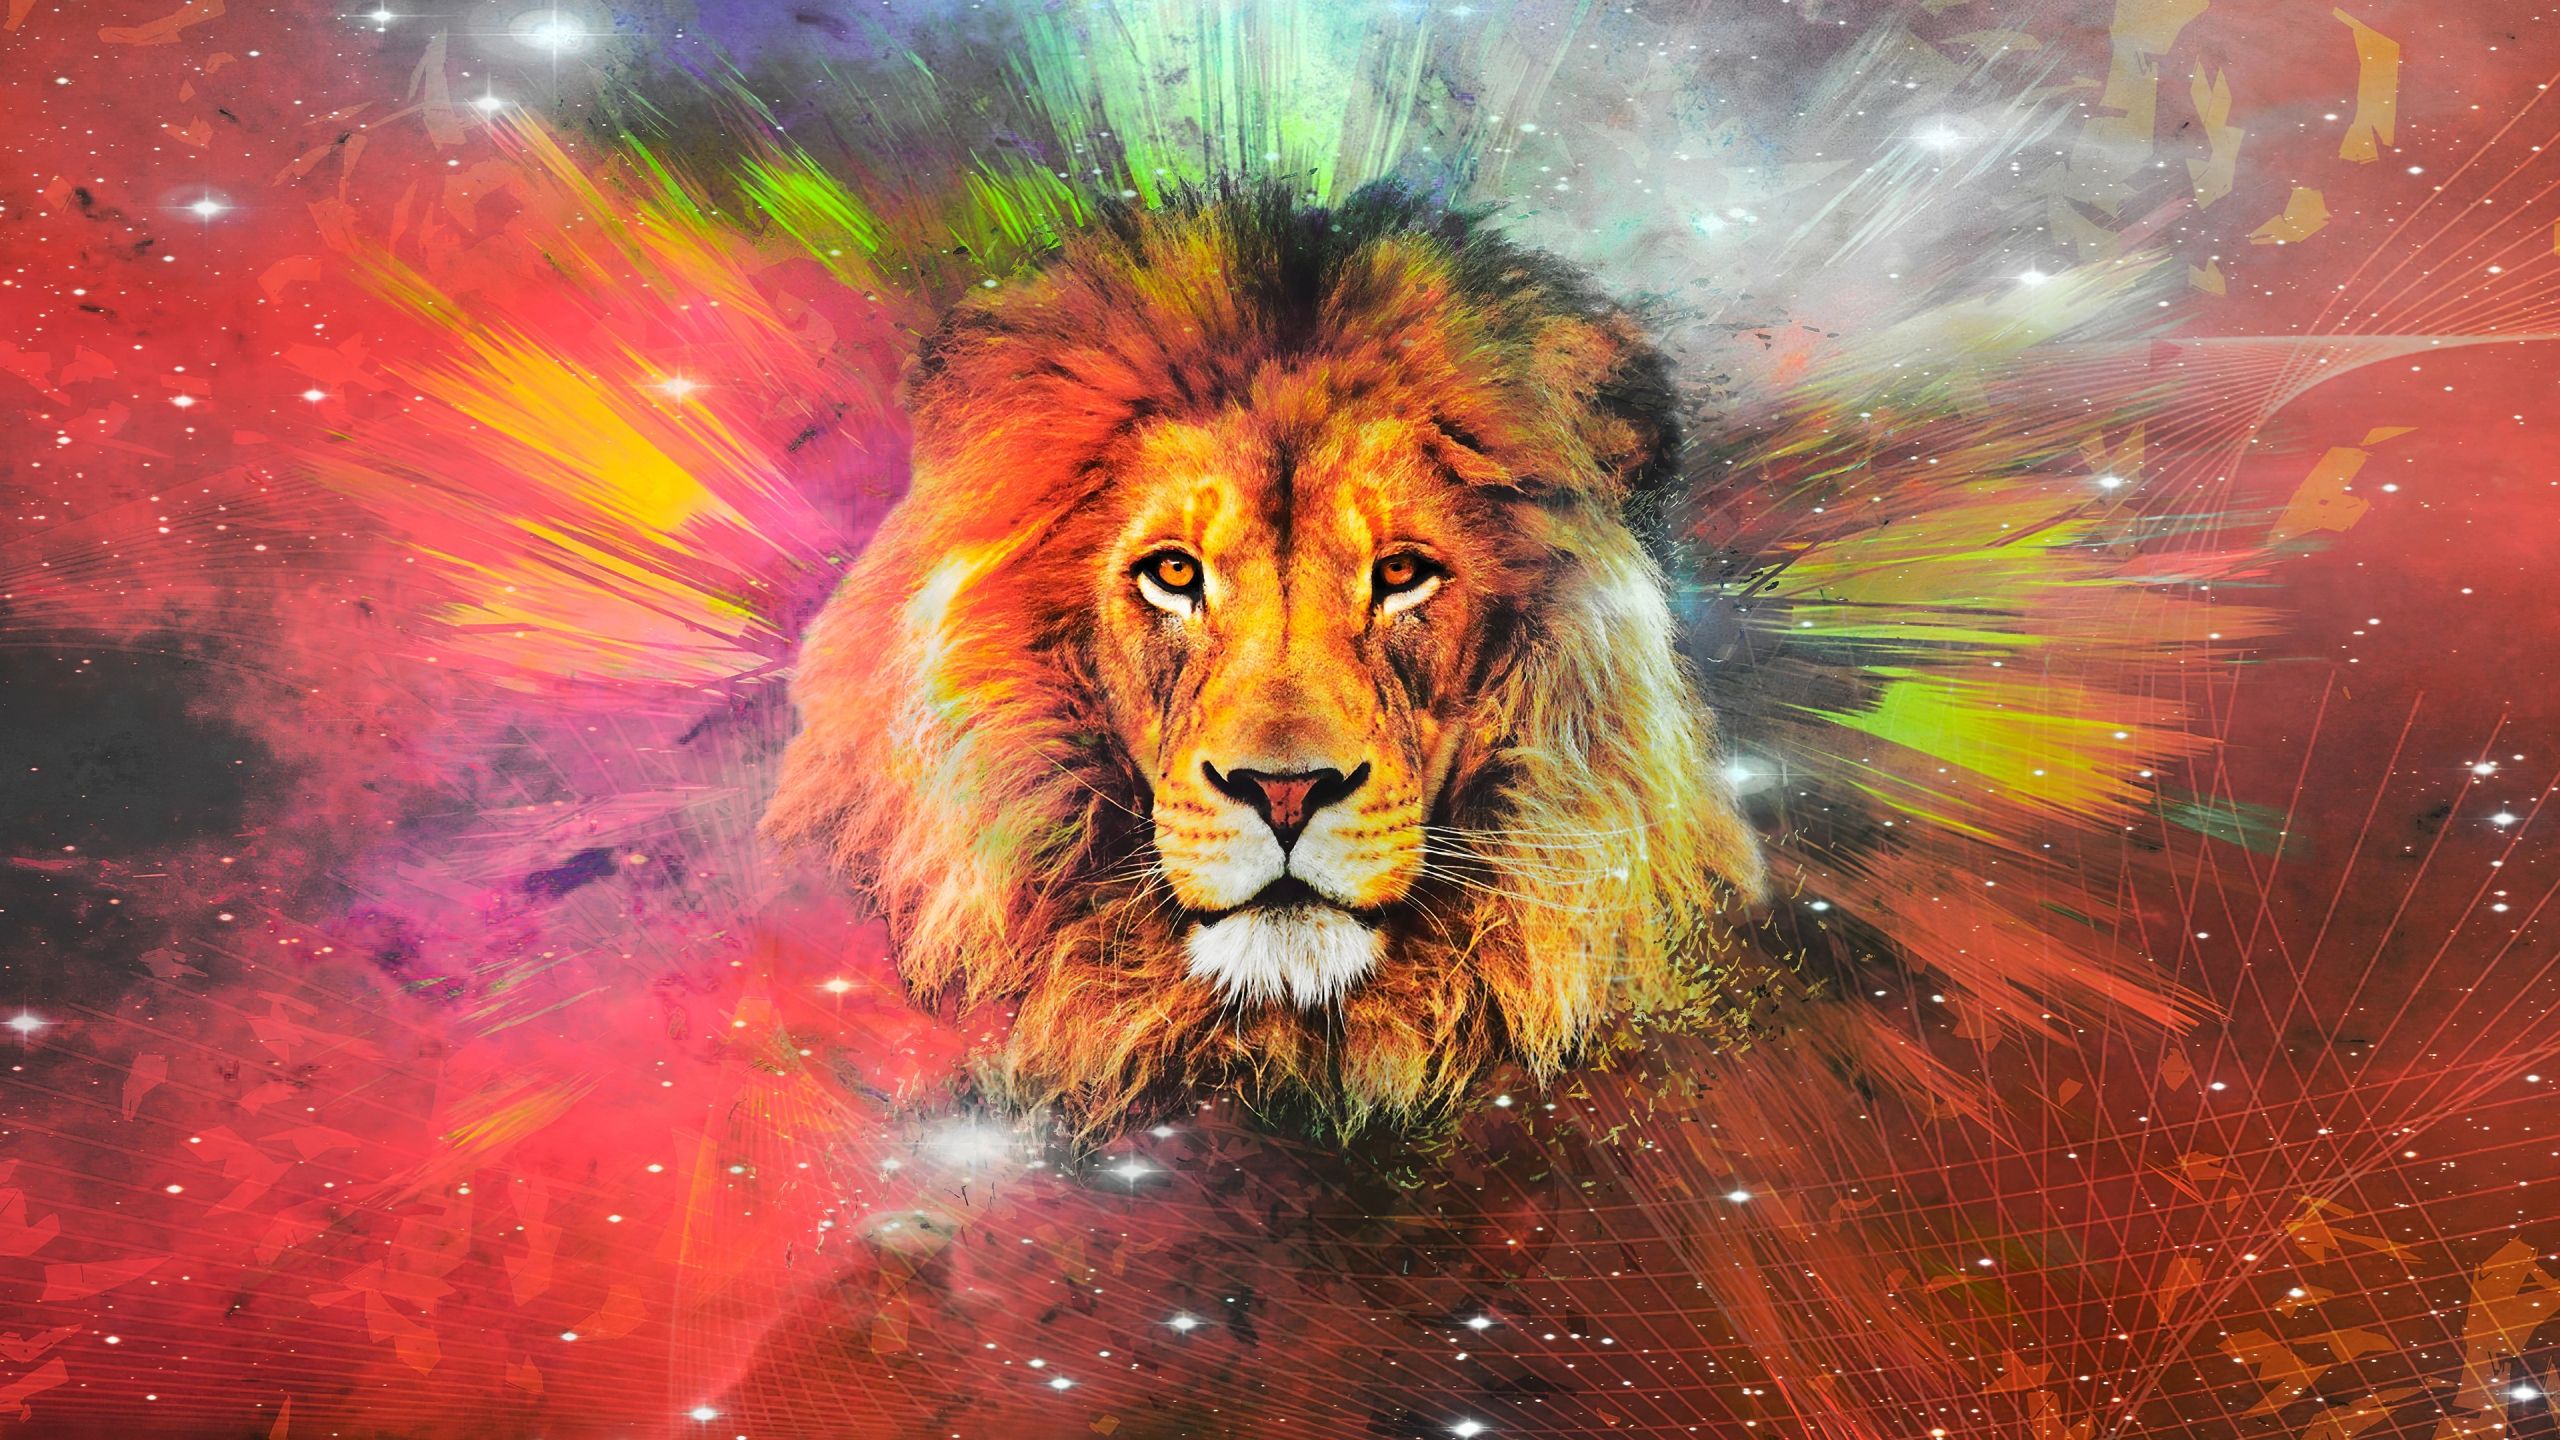 Lion in Galaxy Wallpaper 4k Ultra HD